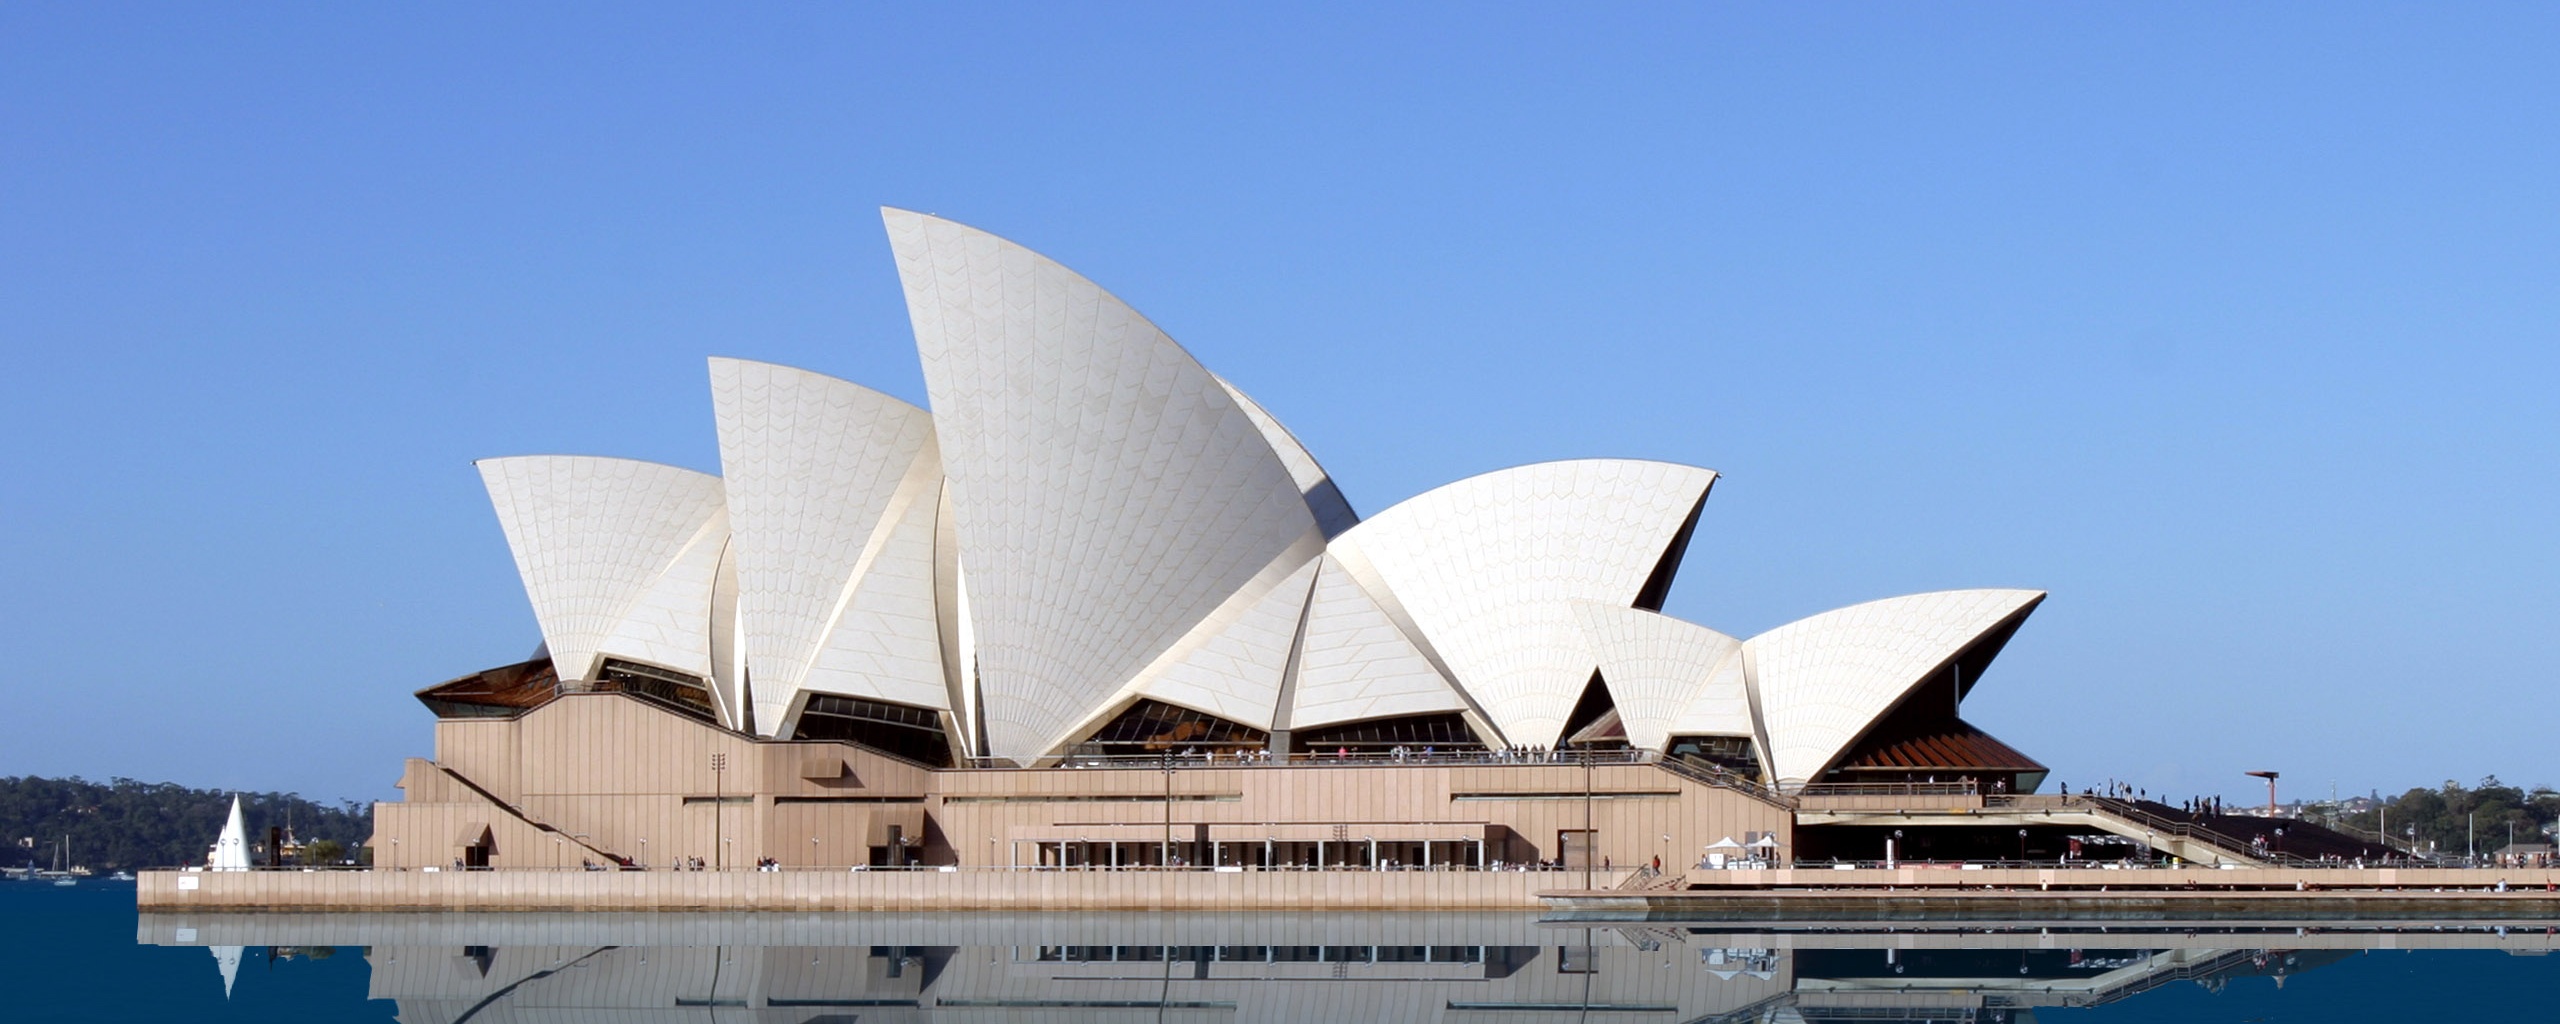 Сиднейский зал оперы обои